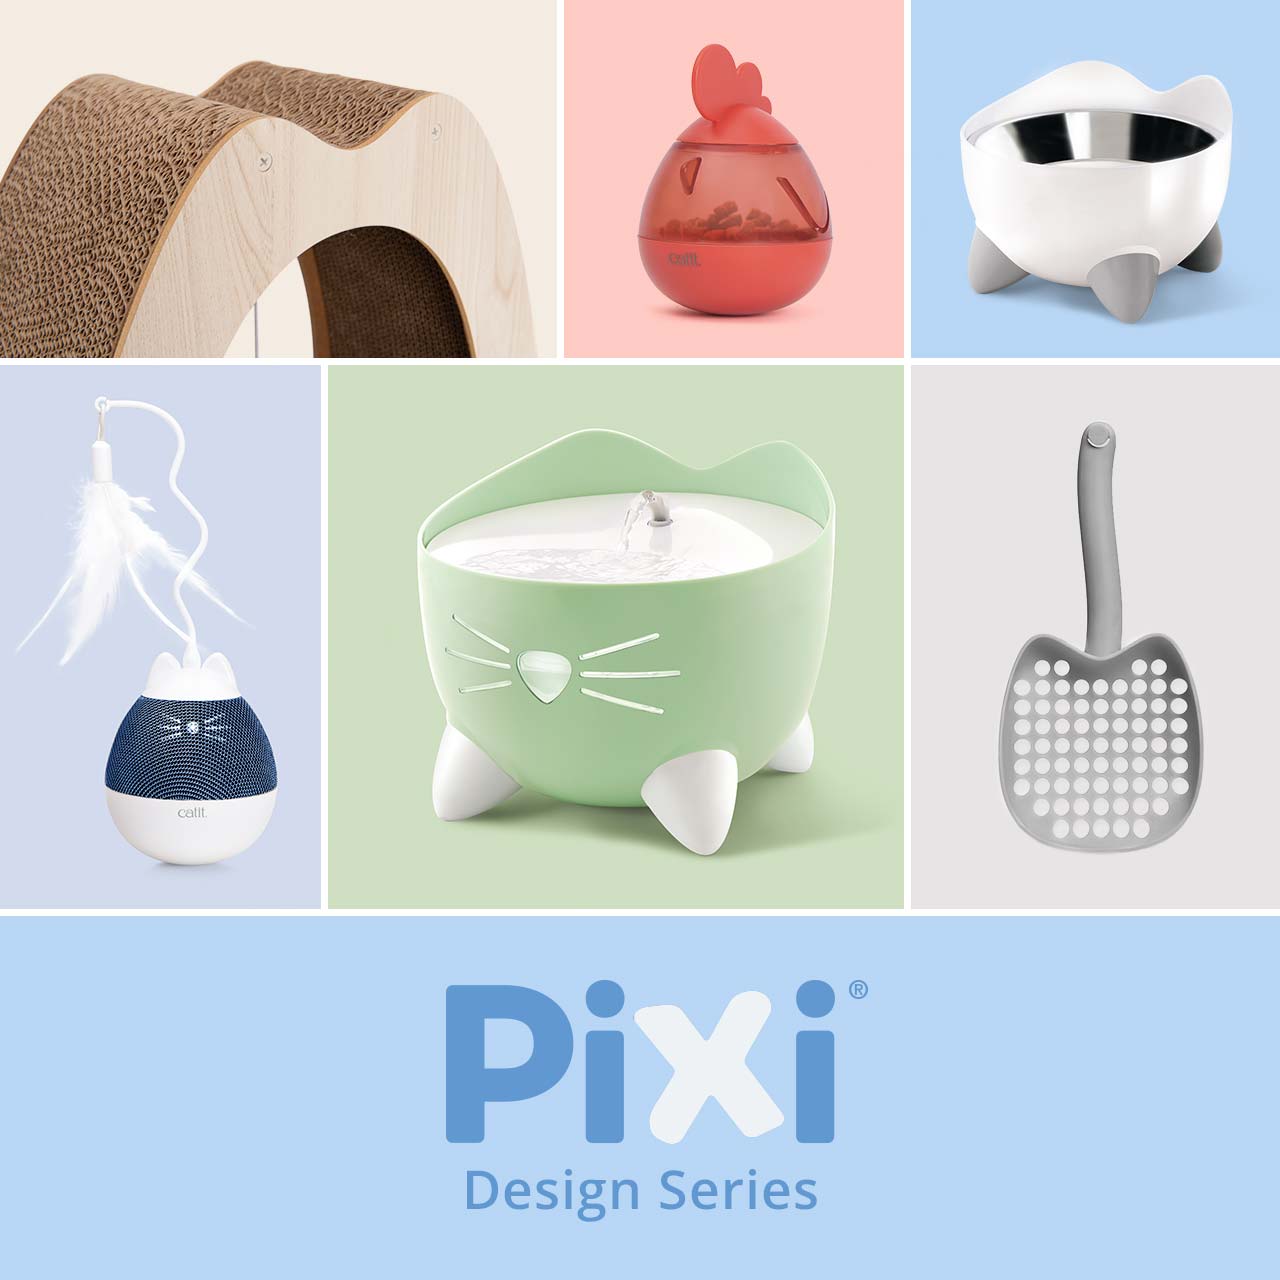 Catit PIXI Design series